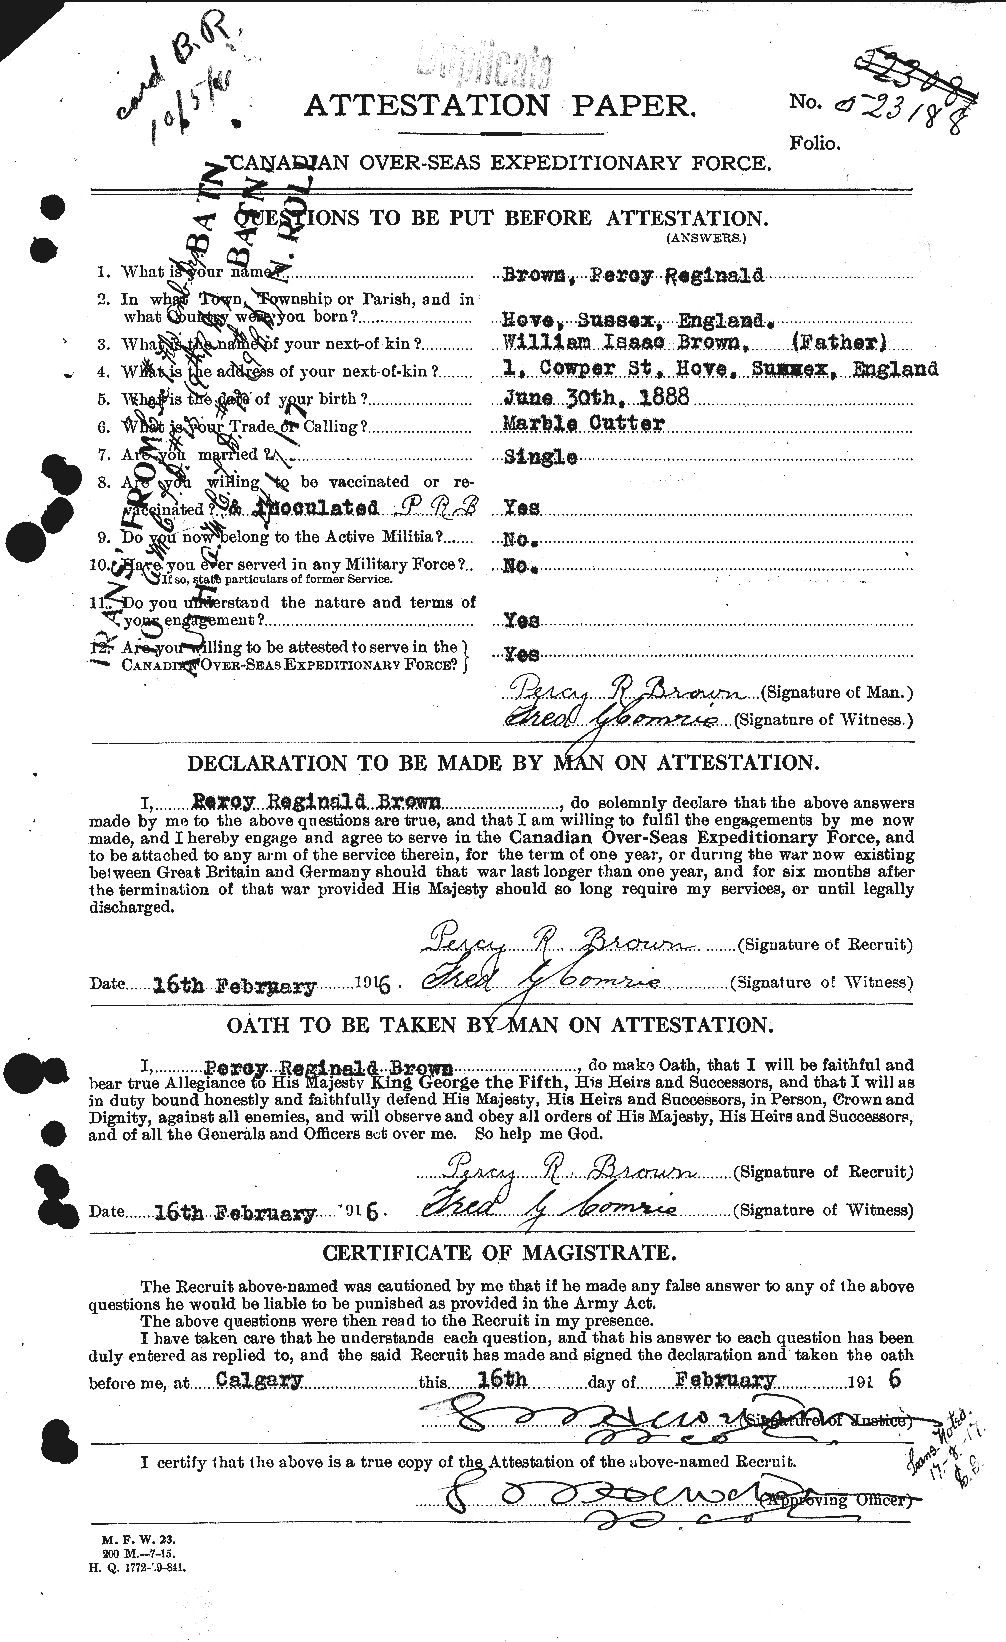 Dossiers du Personnel de la Première Guerre mondiale - CEC 267177a